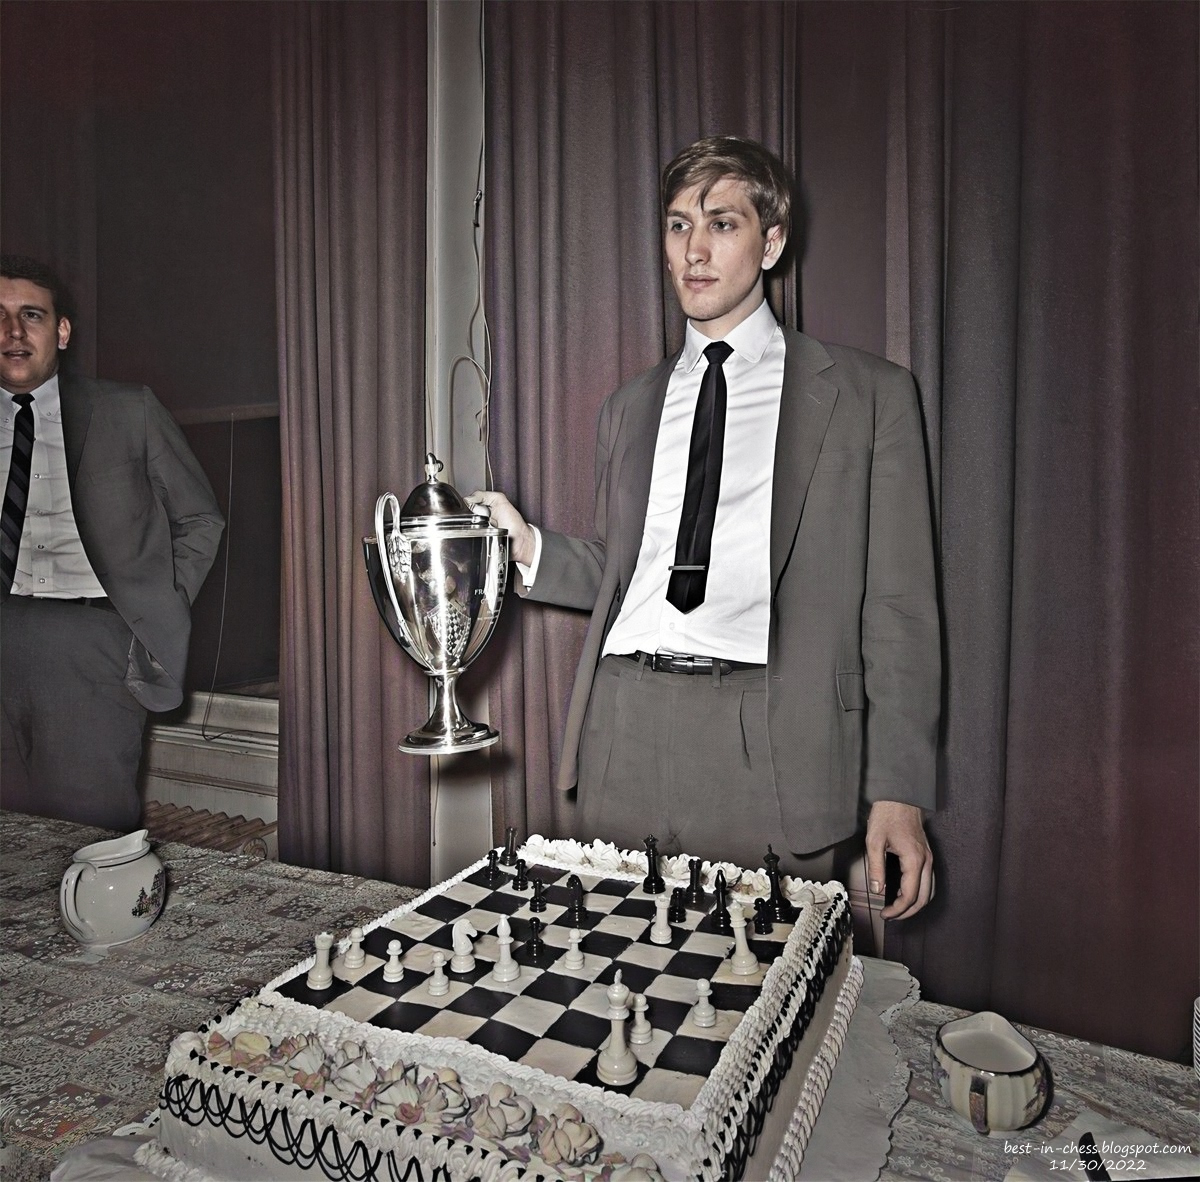 The Fischer King: Recalling four days in 1964 when Bobby Fischer